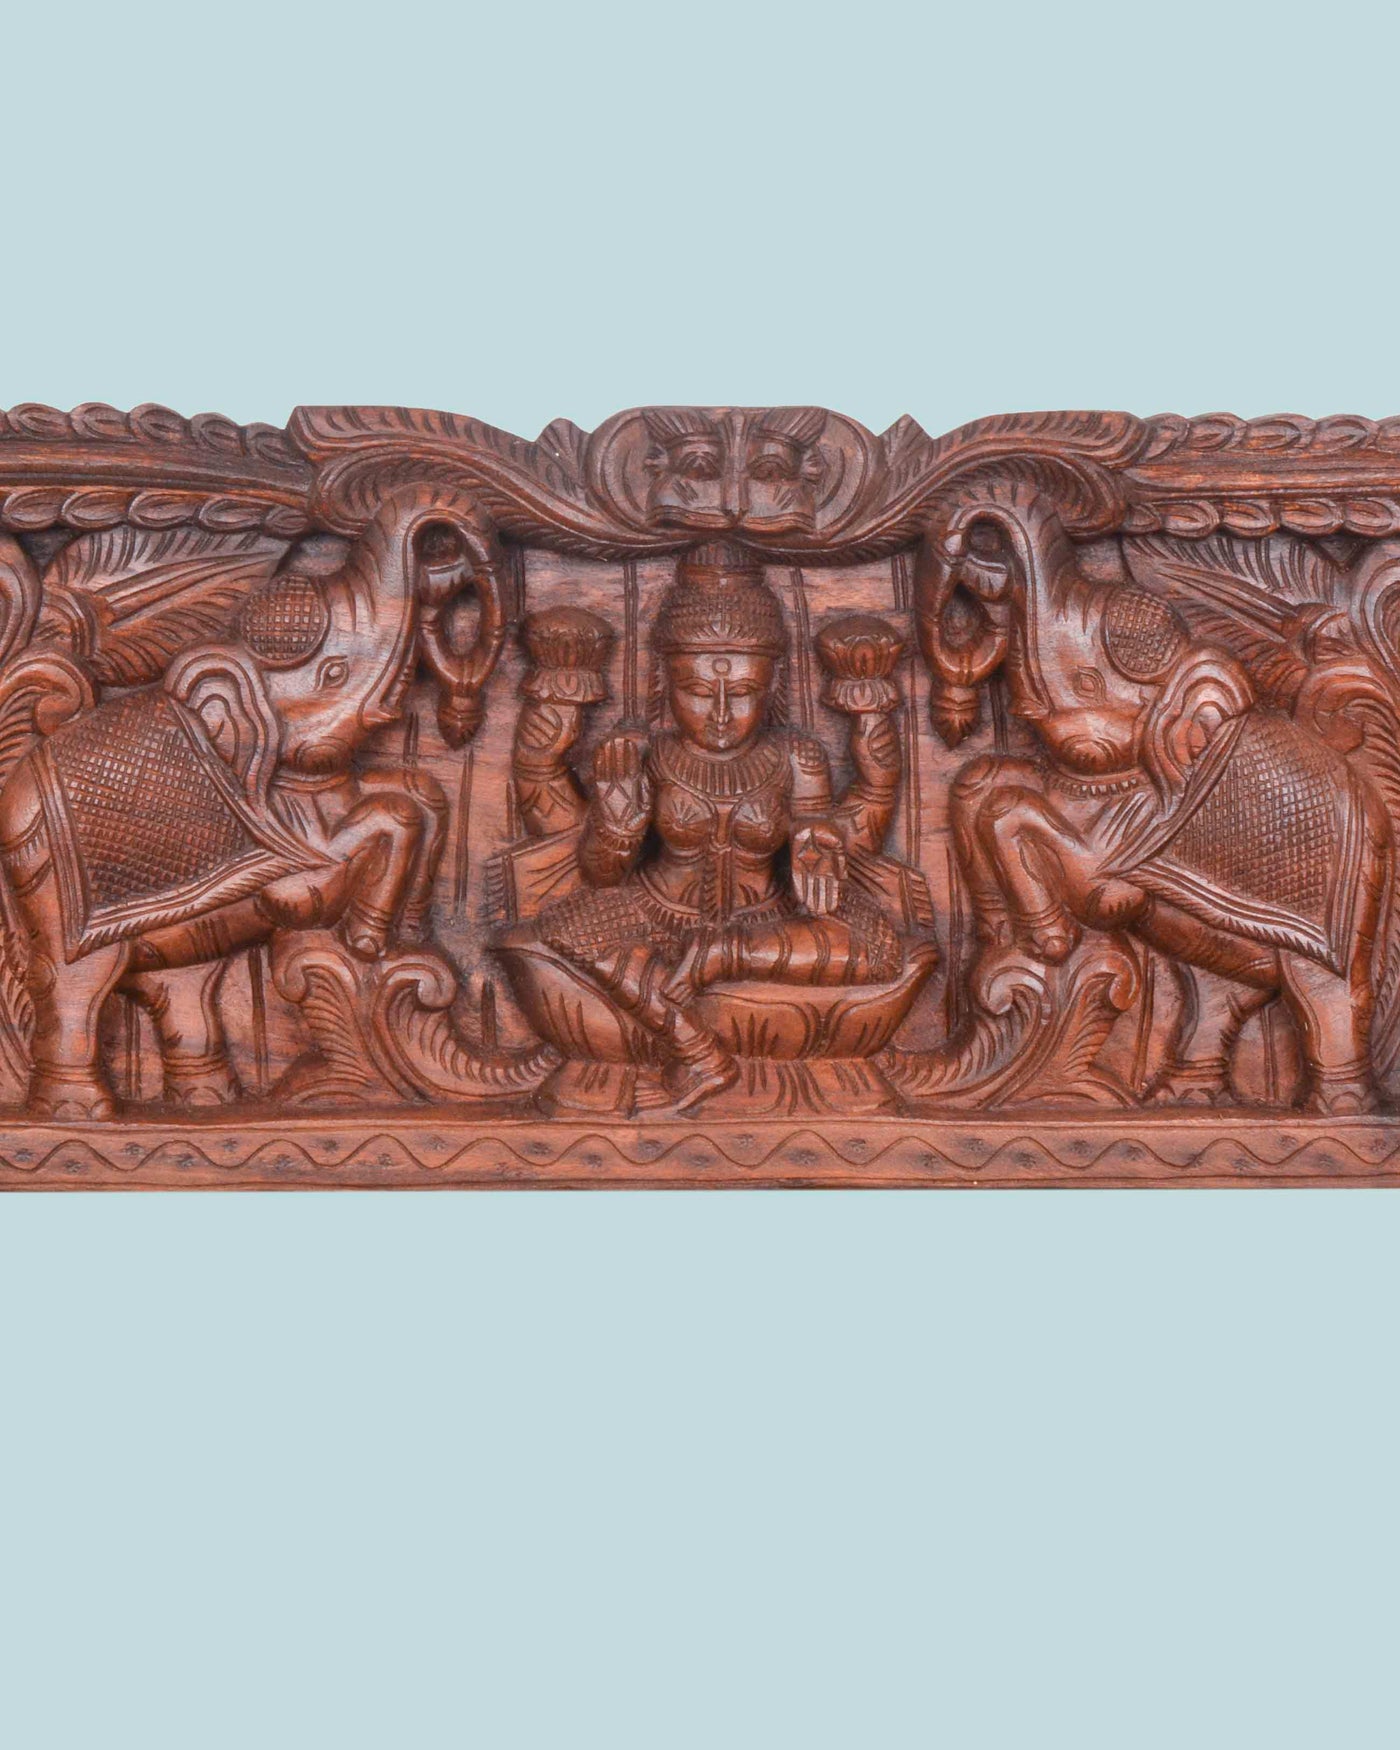 Wax Brown GajaLakshmi,Ganesh,saraswathi panel 46"